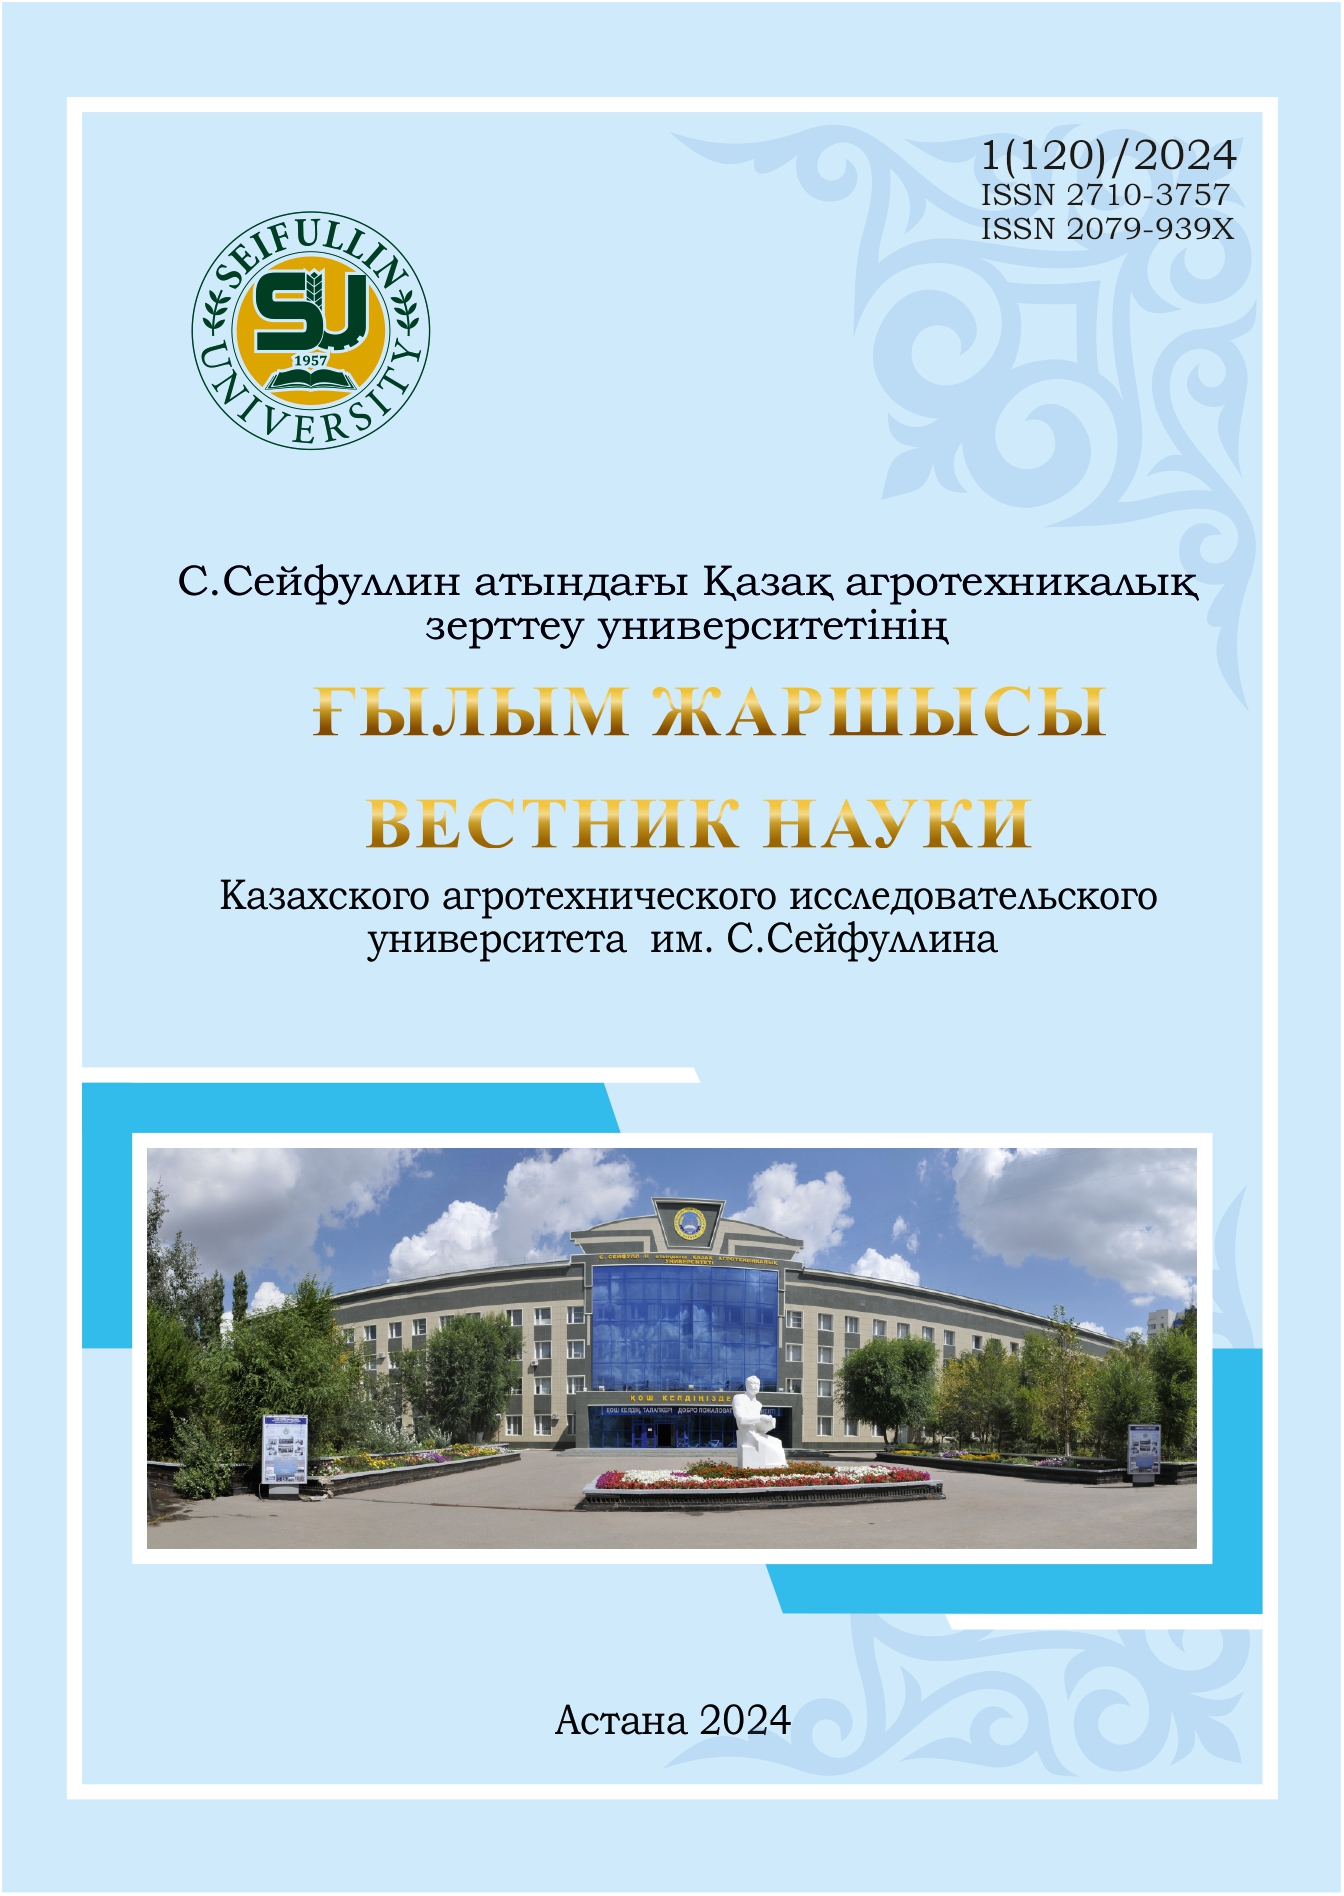 					Показать № 1(120) (2024): Вестник науки "Казахского агротехнического исследовательского университета им С. Сейфуллина"
				